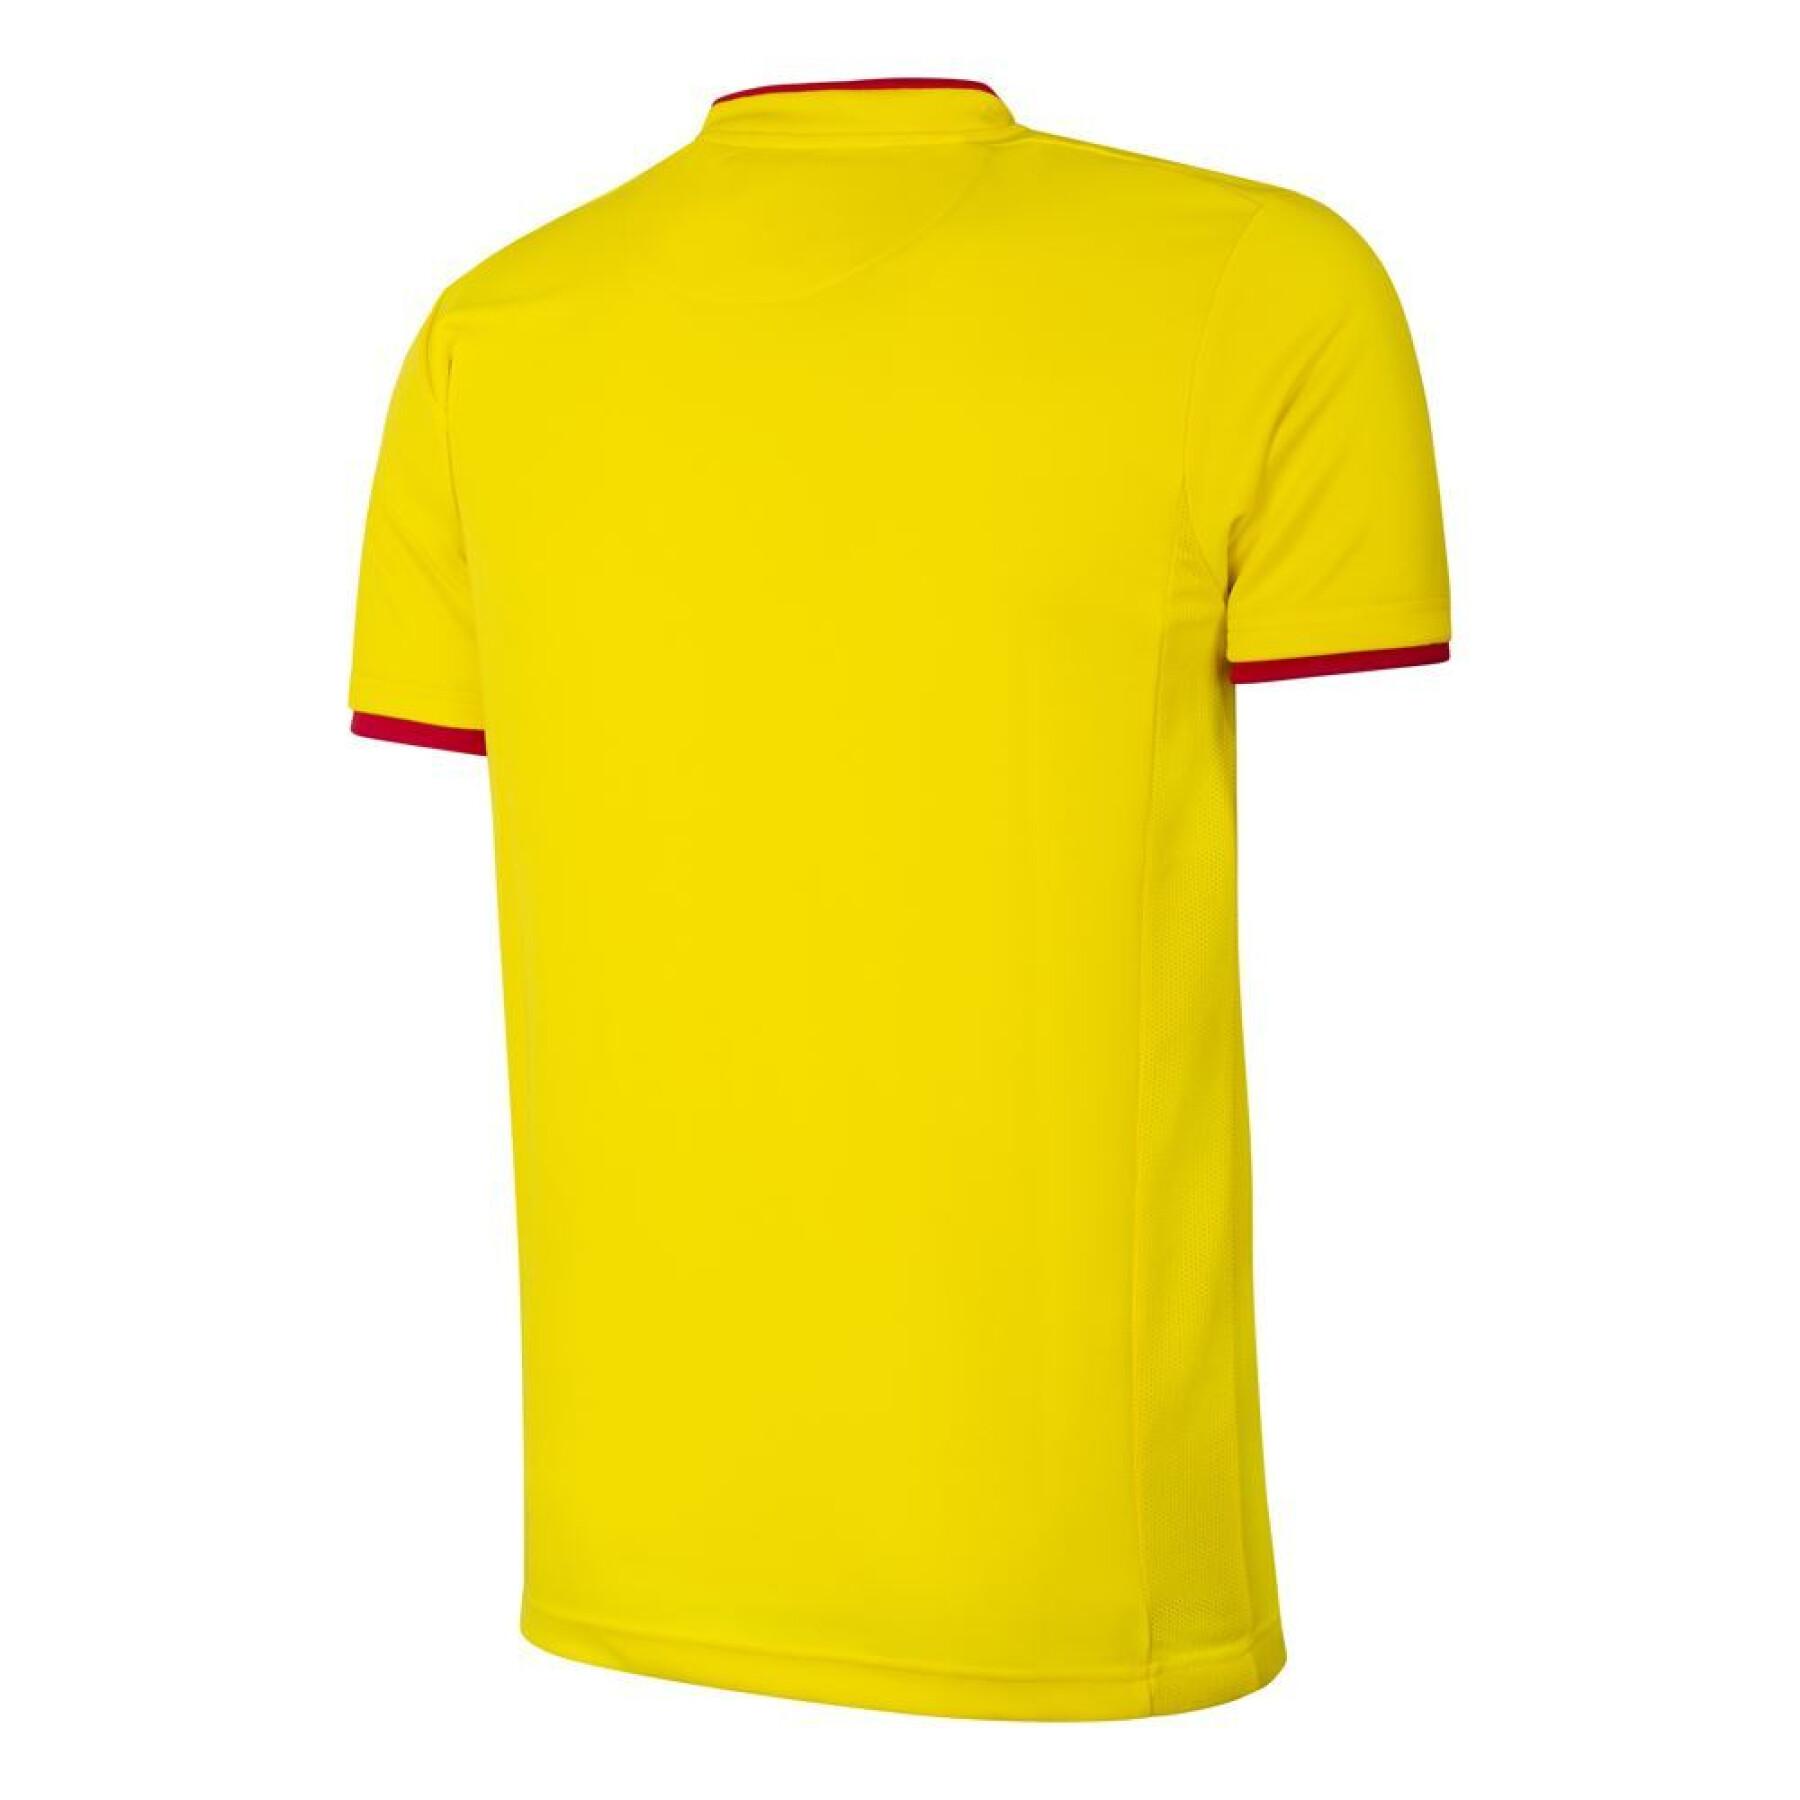 Watford shirt 2012/13 